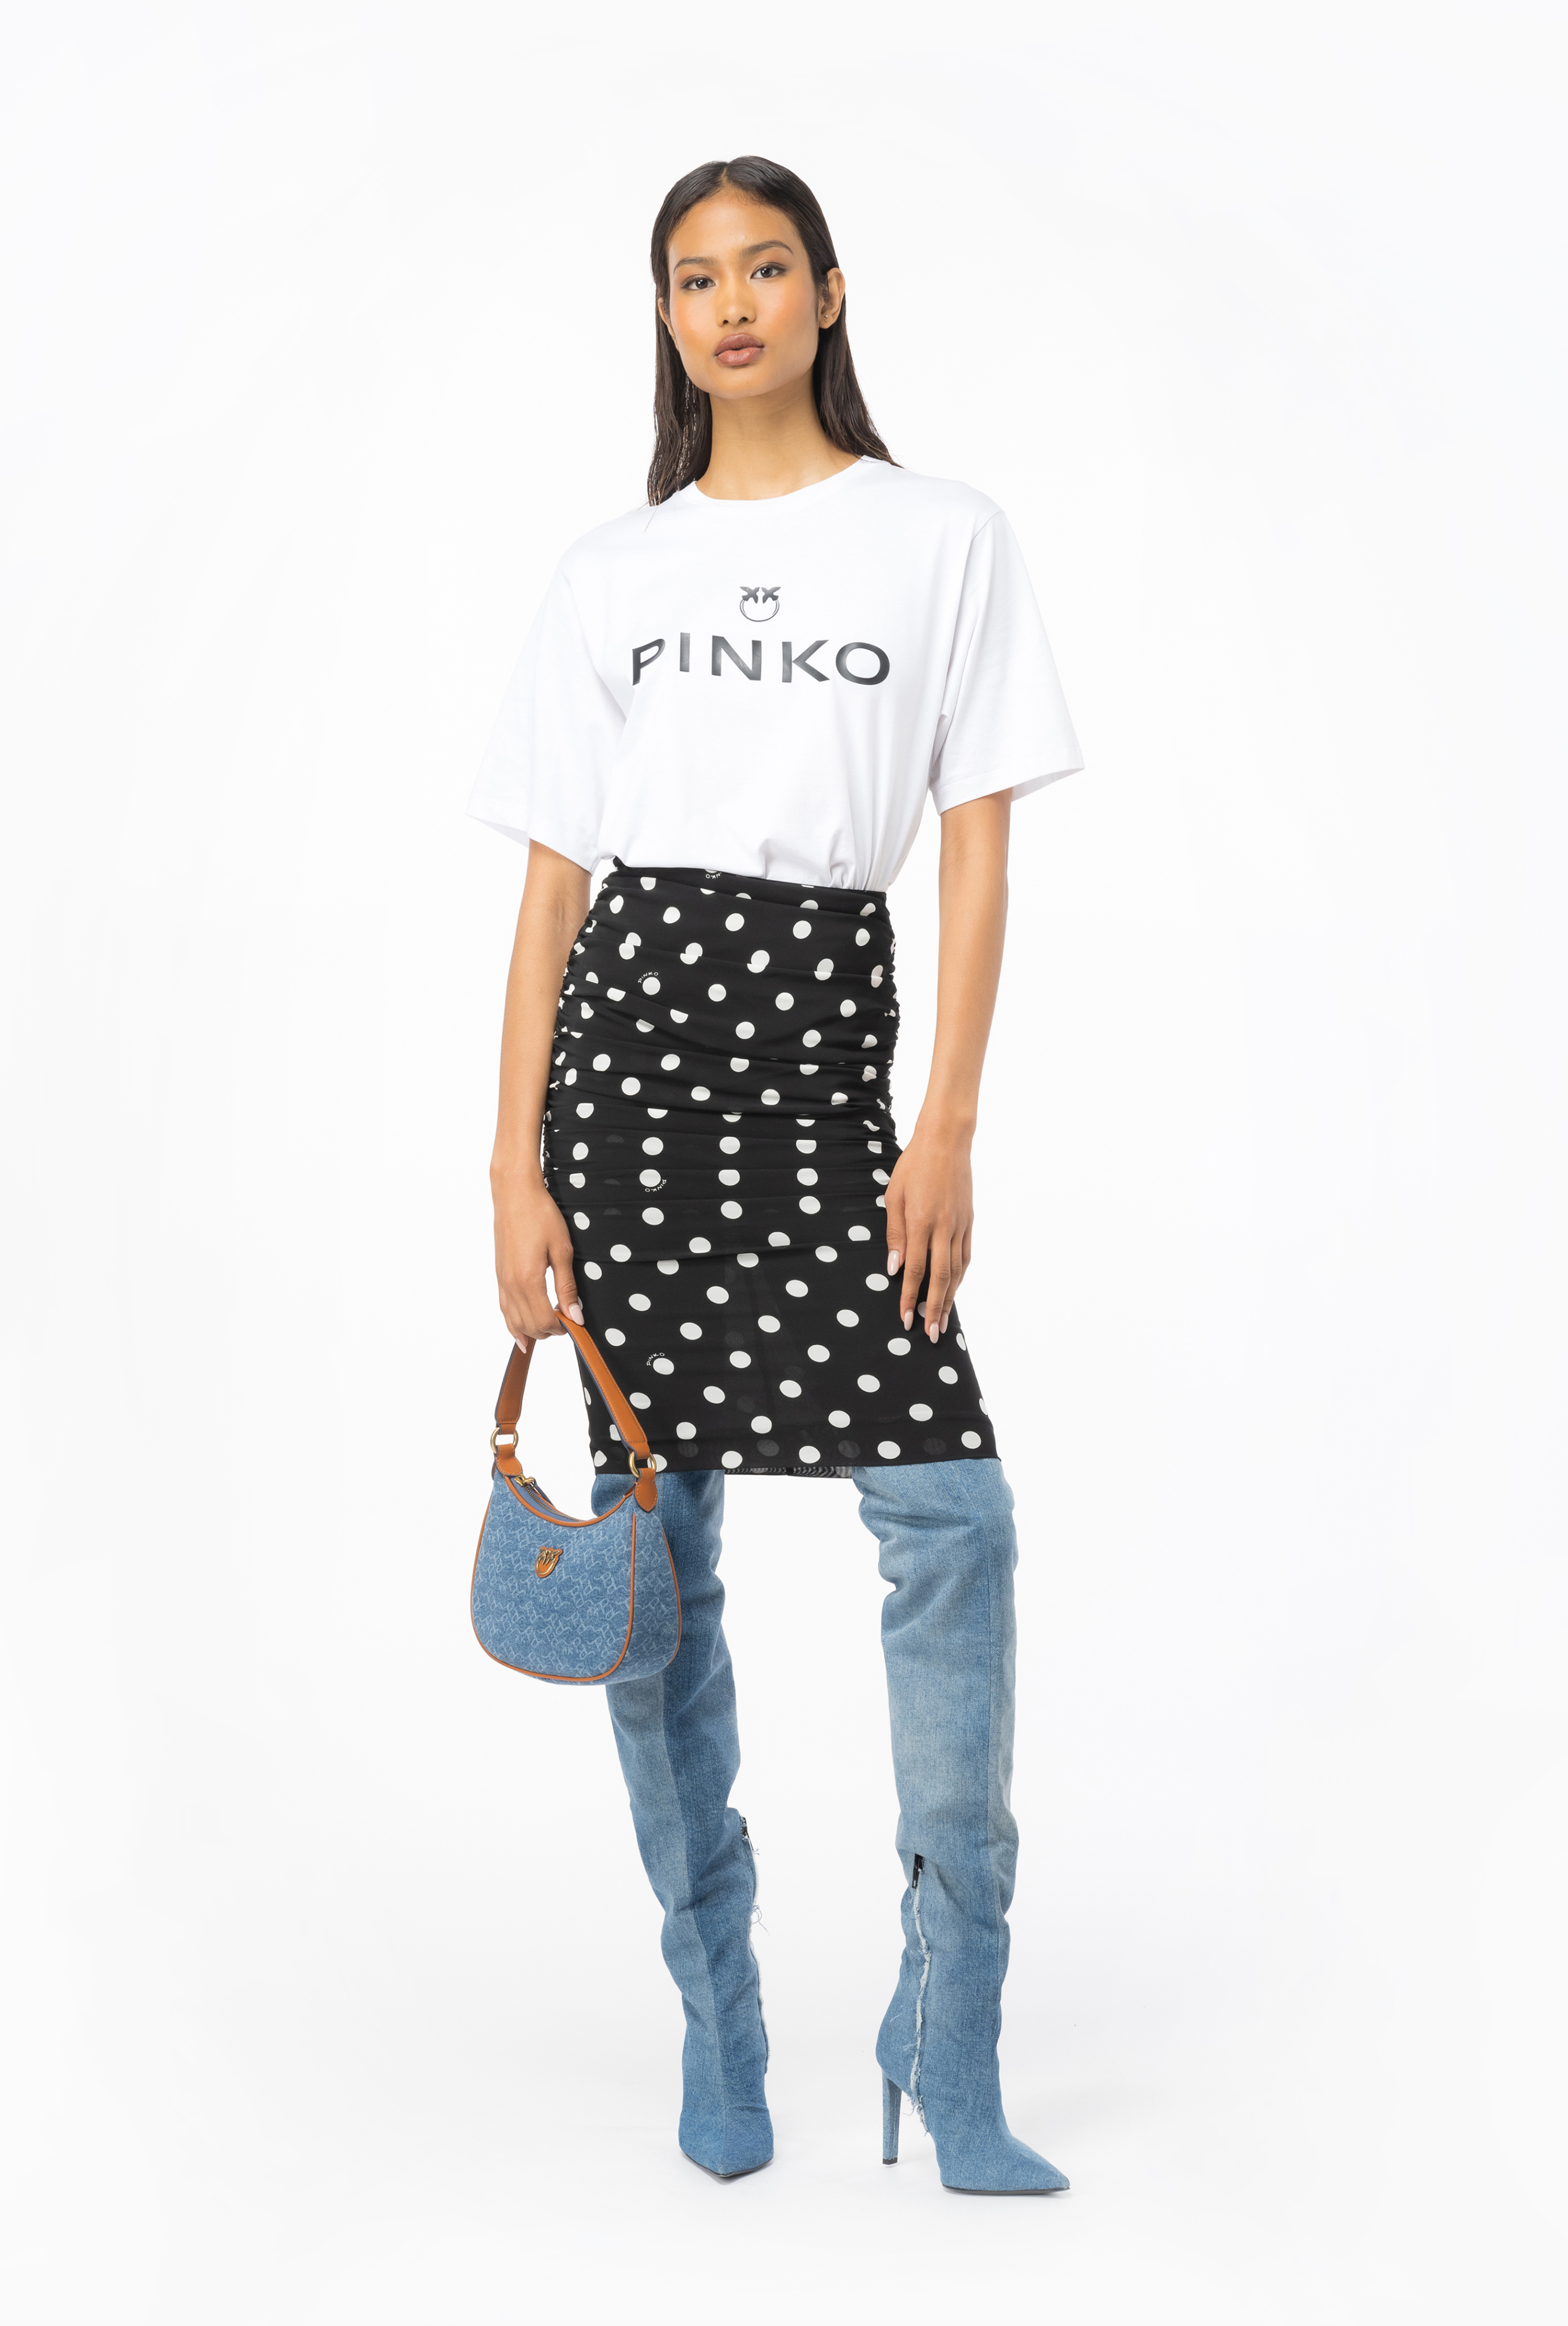 Pinko, Polka-Dot Shirt, Black/White, 40